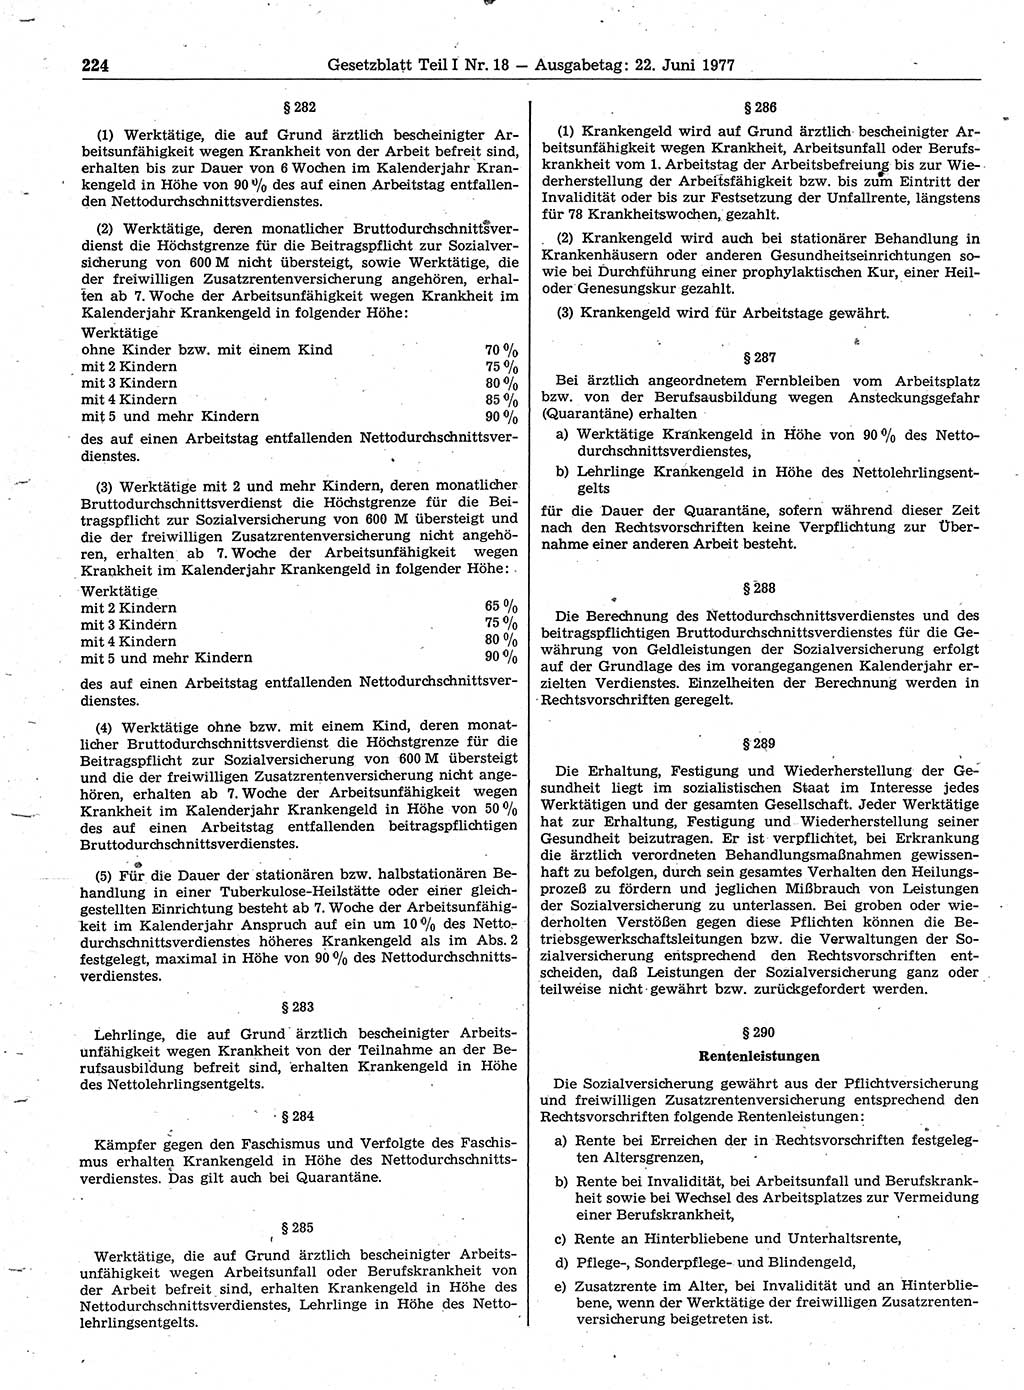 Gesetzblatt (GBl.) der Deutschen Demokratischen Republik (DDR) Teil Ⅰ 1977, Seite 224 (GBl. DDR Ⅰ 1977, S. 224)